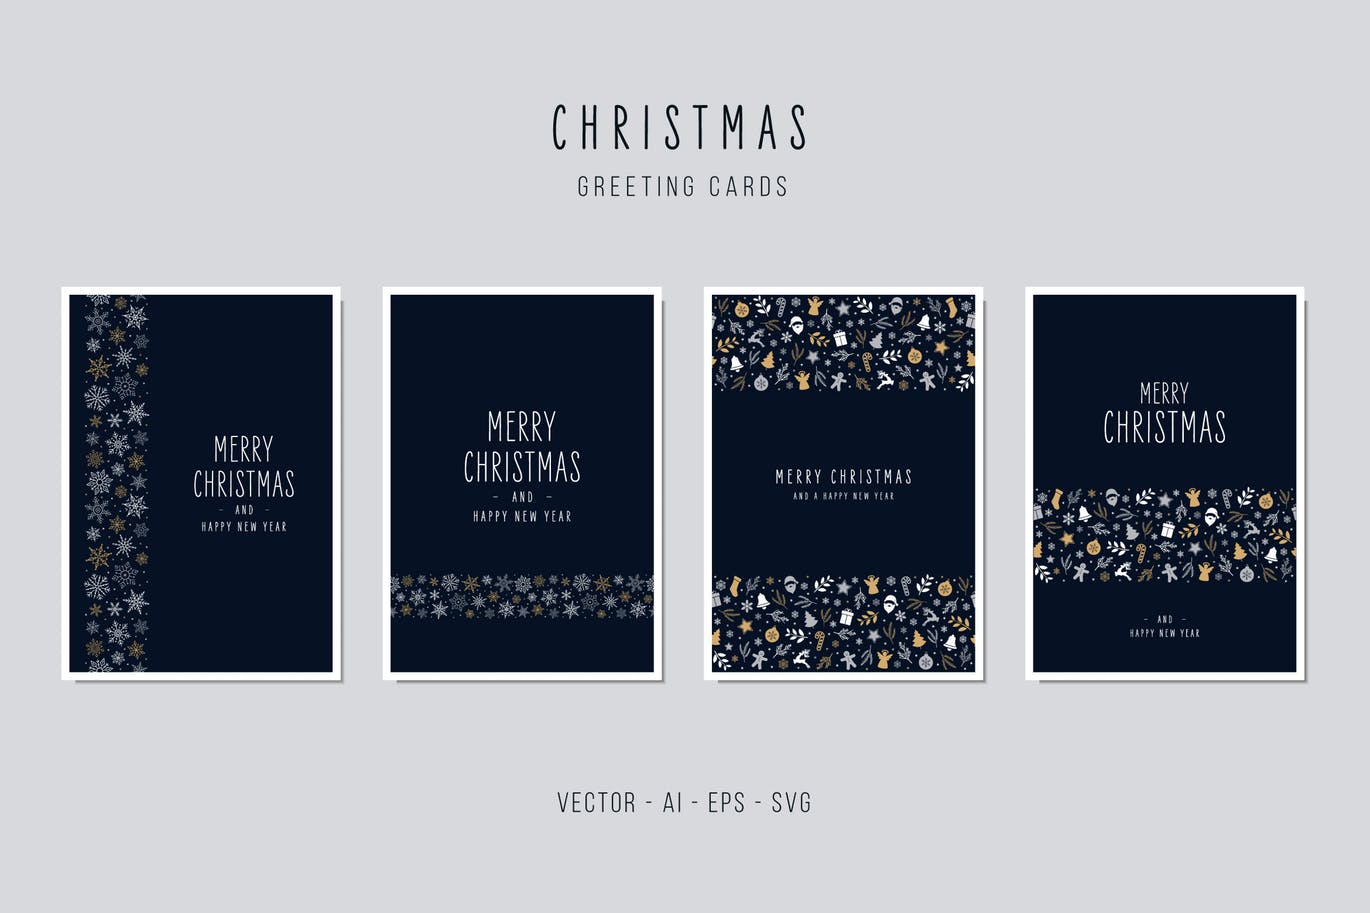 午夜蓝圣诞节装饰元素背景贺卡设计模板 Christmas Greeting Vector Card Set插图